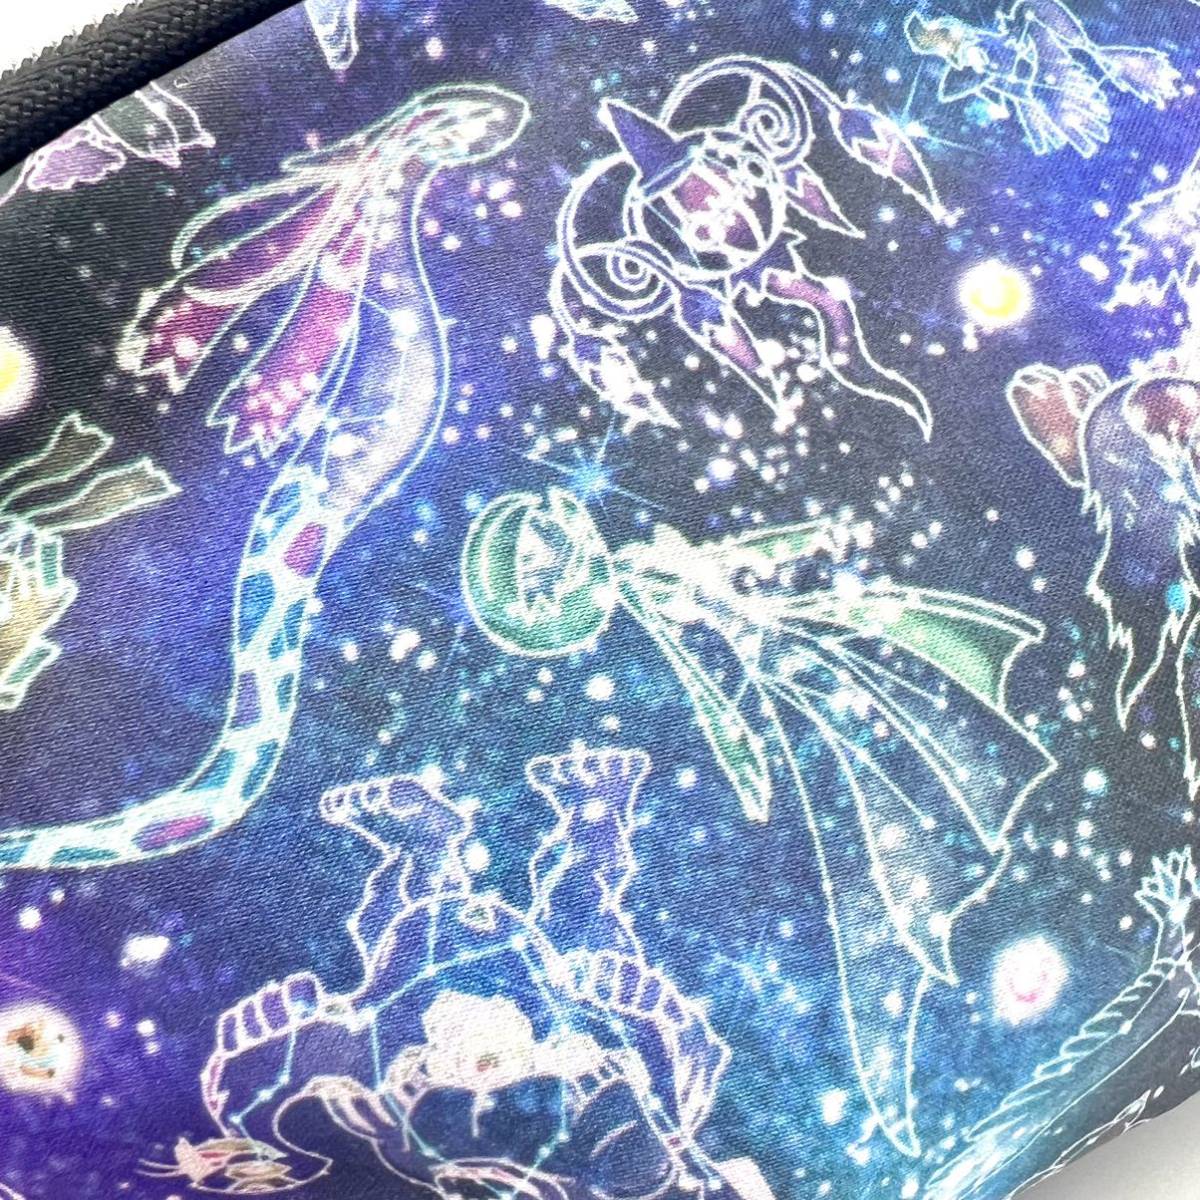 レア 2017 pokemon center Look Upon the Stars pouch ポケモンセンター 限定 ポーチ ポケモン ポケットモンスター コスメ Milotic cosmog_画像5